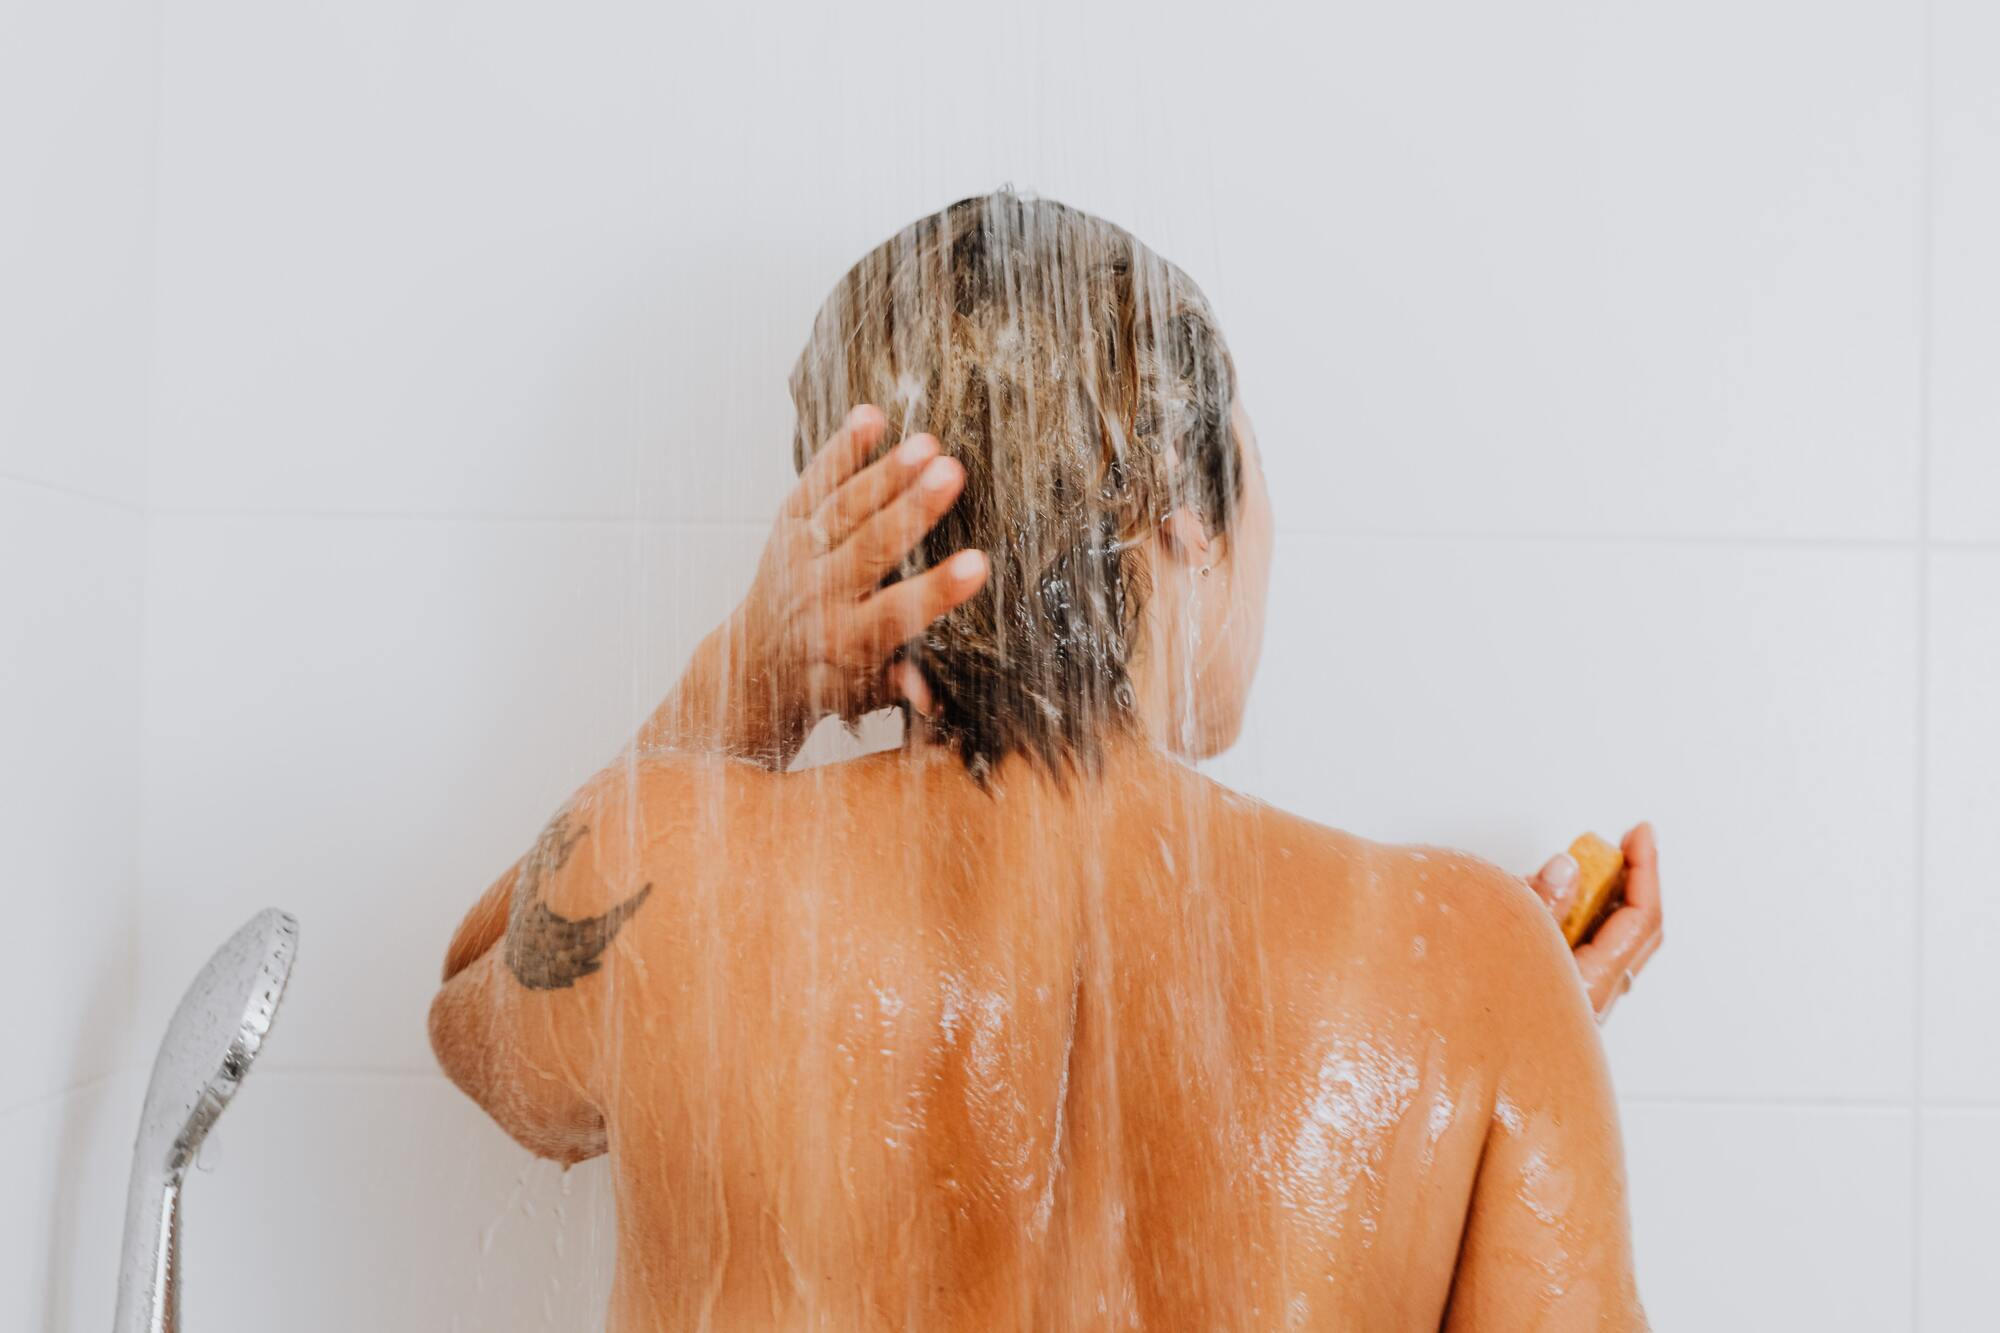 Контрасний душ прискорить метаболізм